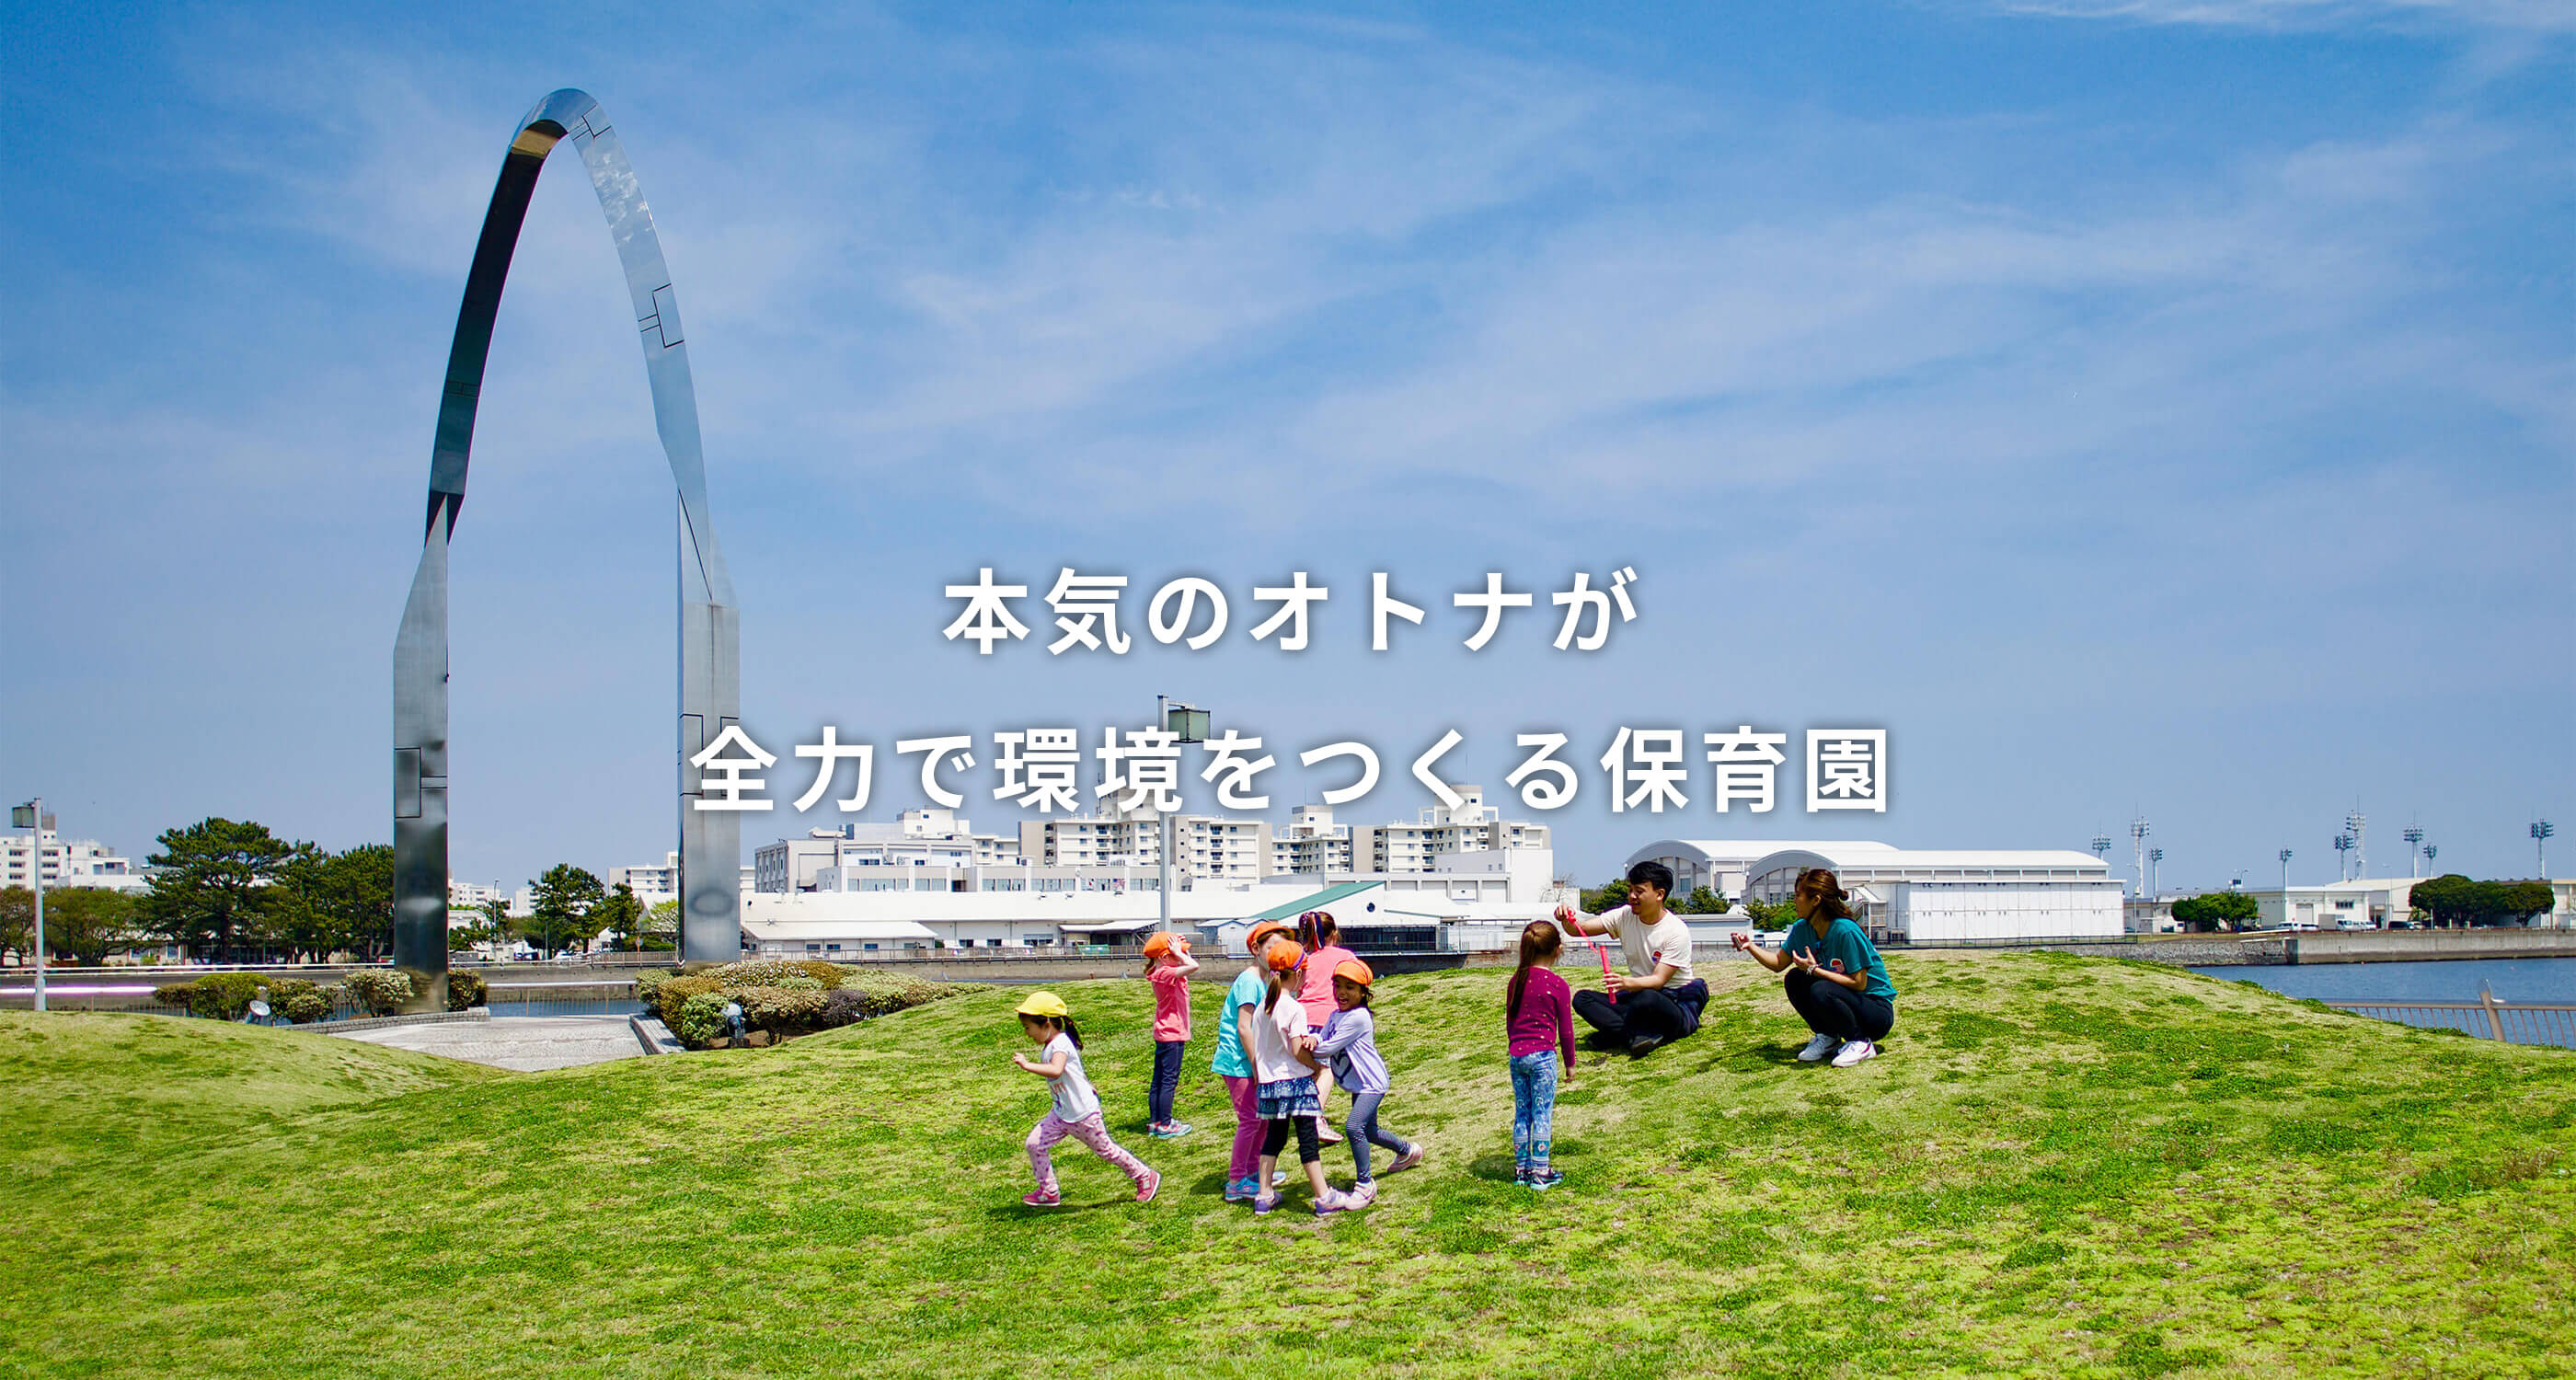 横浜や横須賀で保育園を展開するララランドの求人です